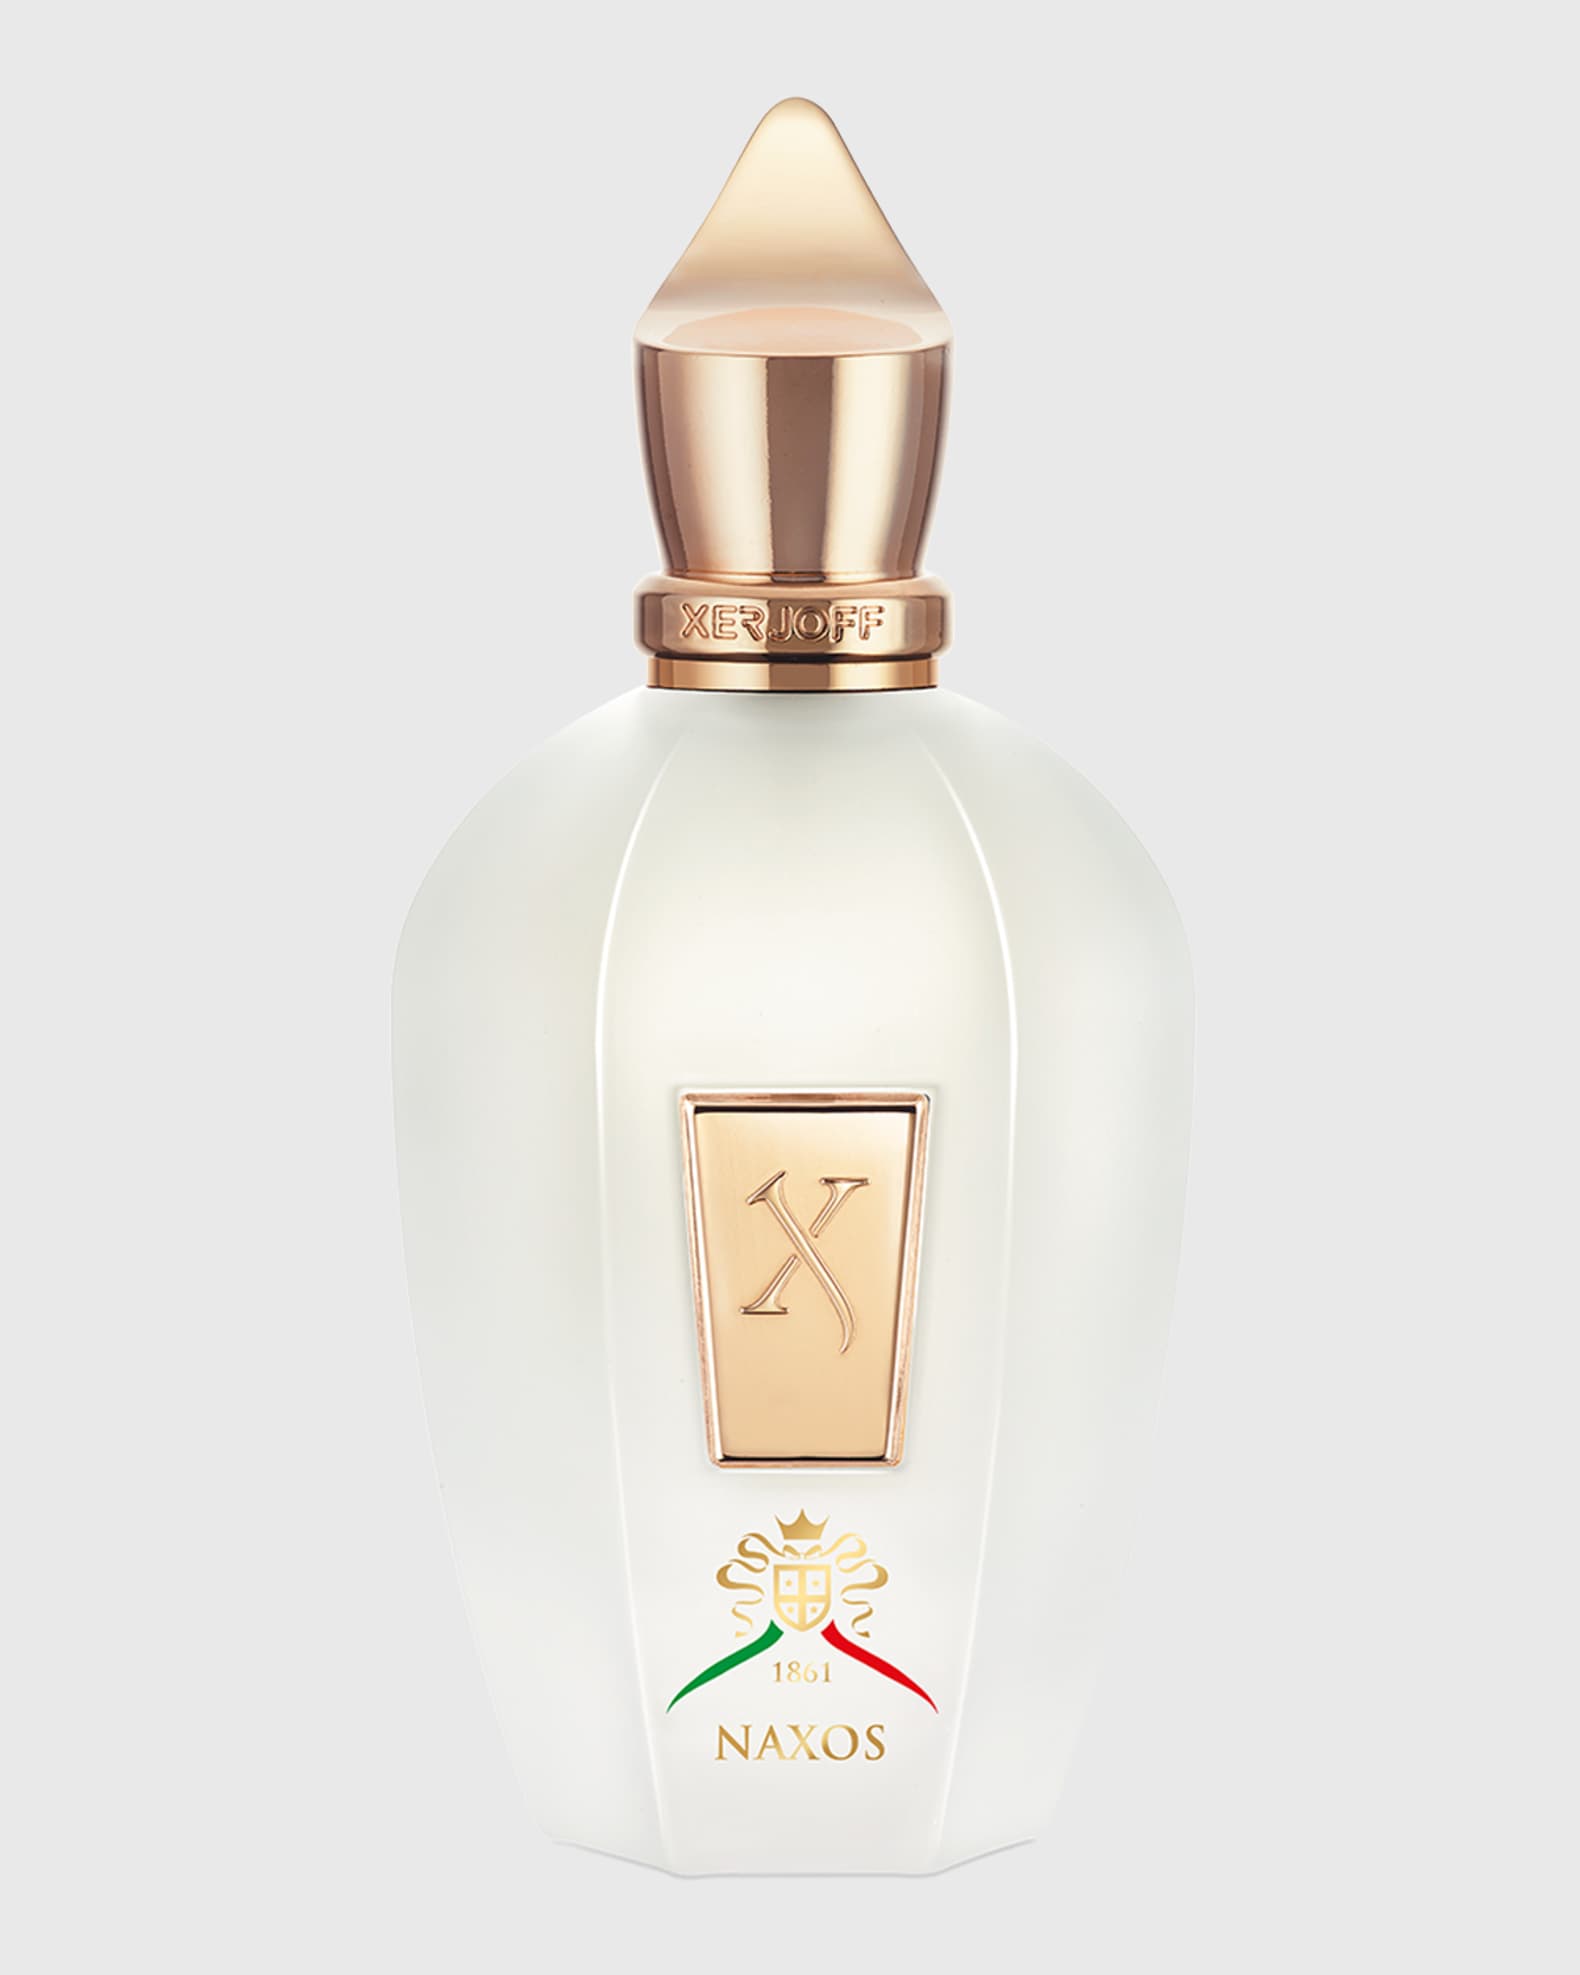 Louis Vuitton Sur La Route Perfume Eau De Parfum 3.4 Oz / 100ml